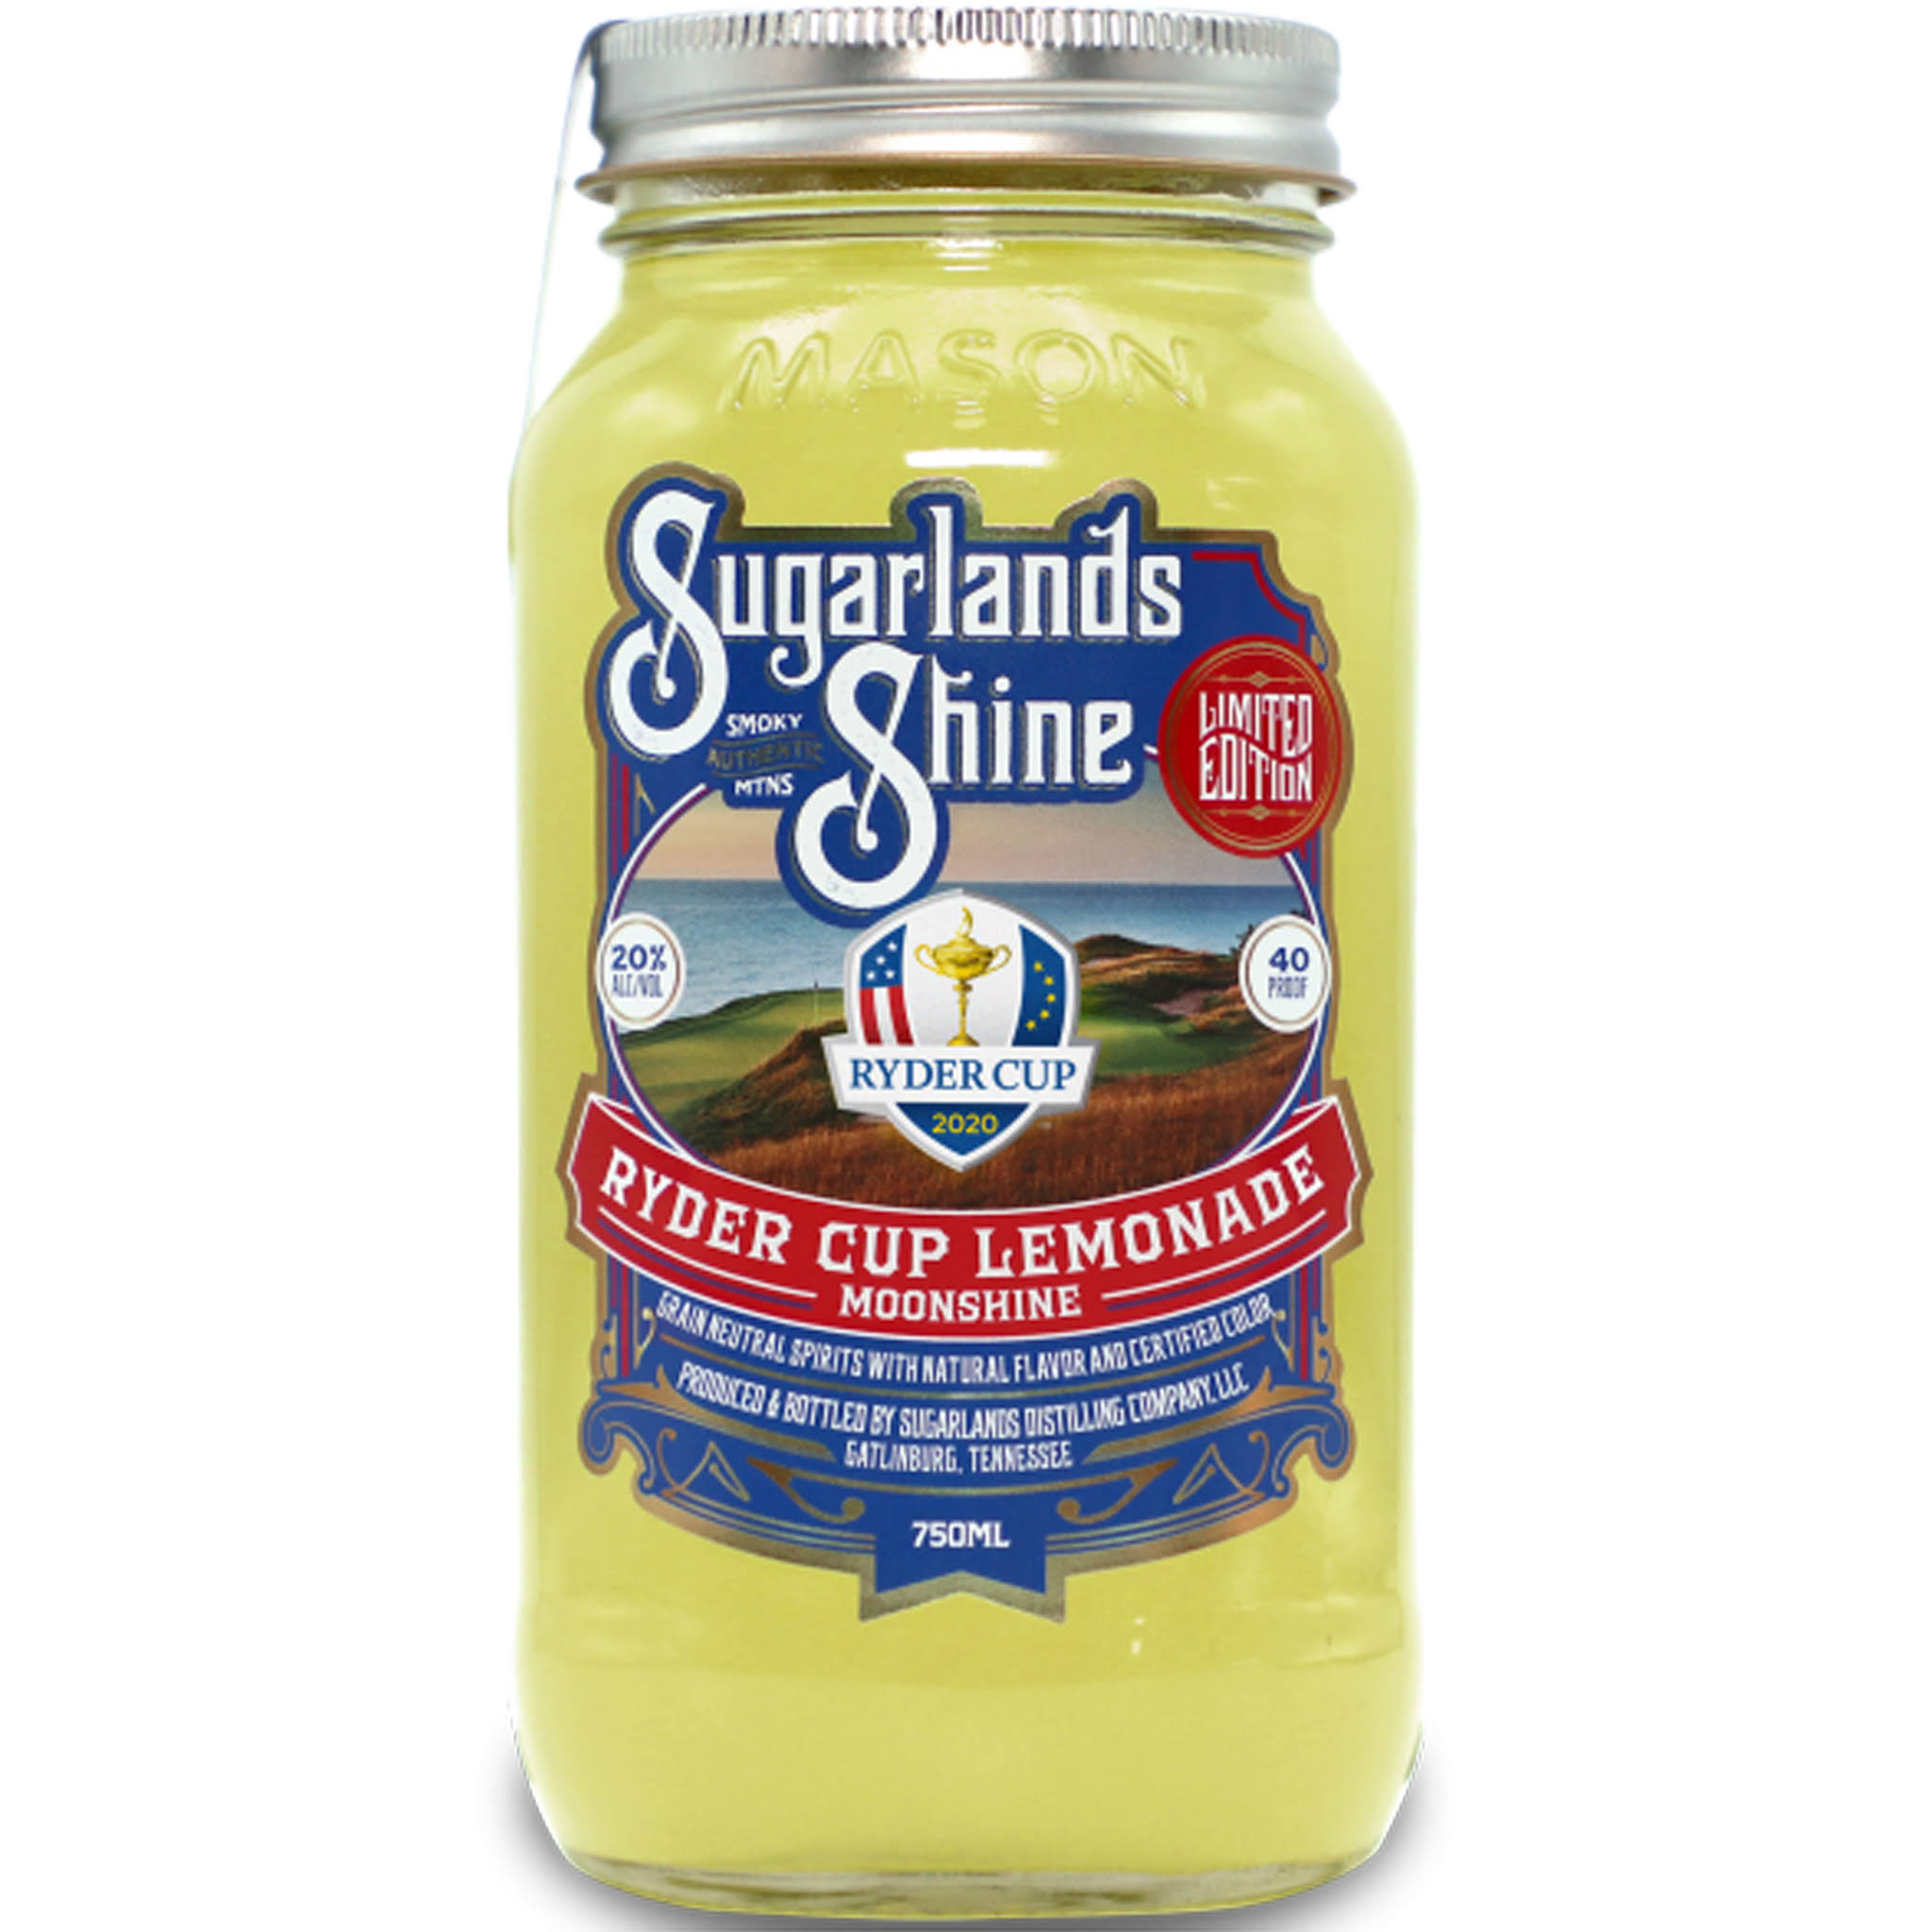 Sugarlands Shine - Ryder Cup Lemonade Moonshine (750ml)